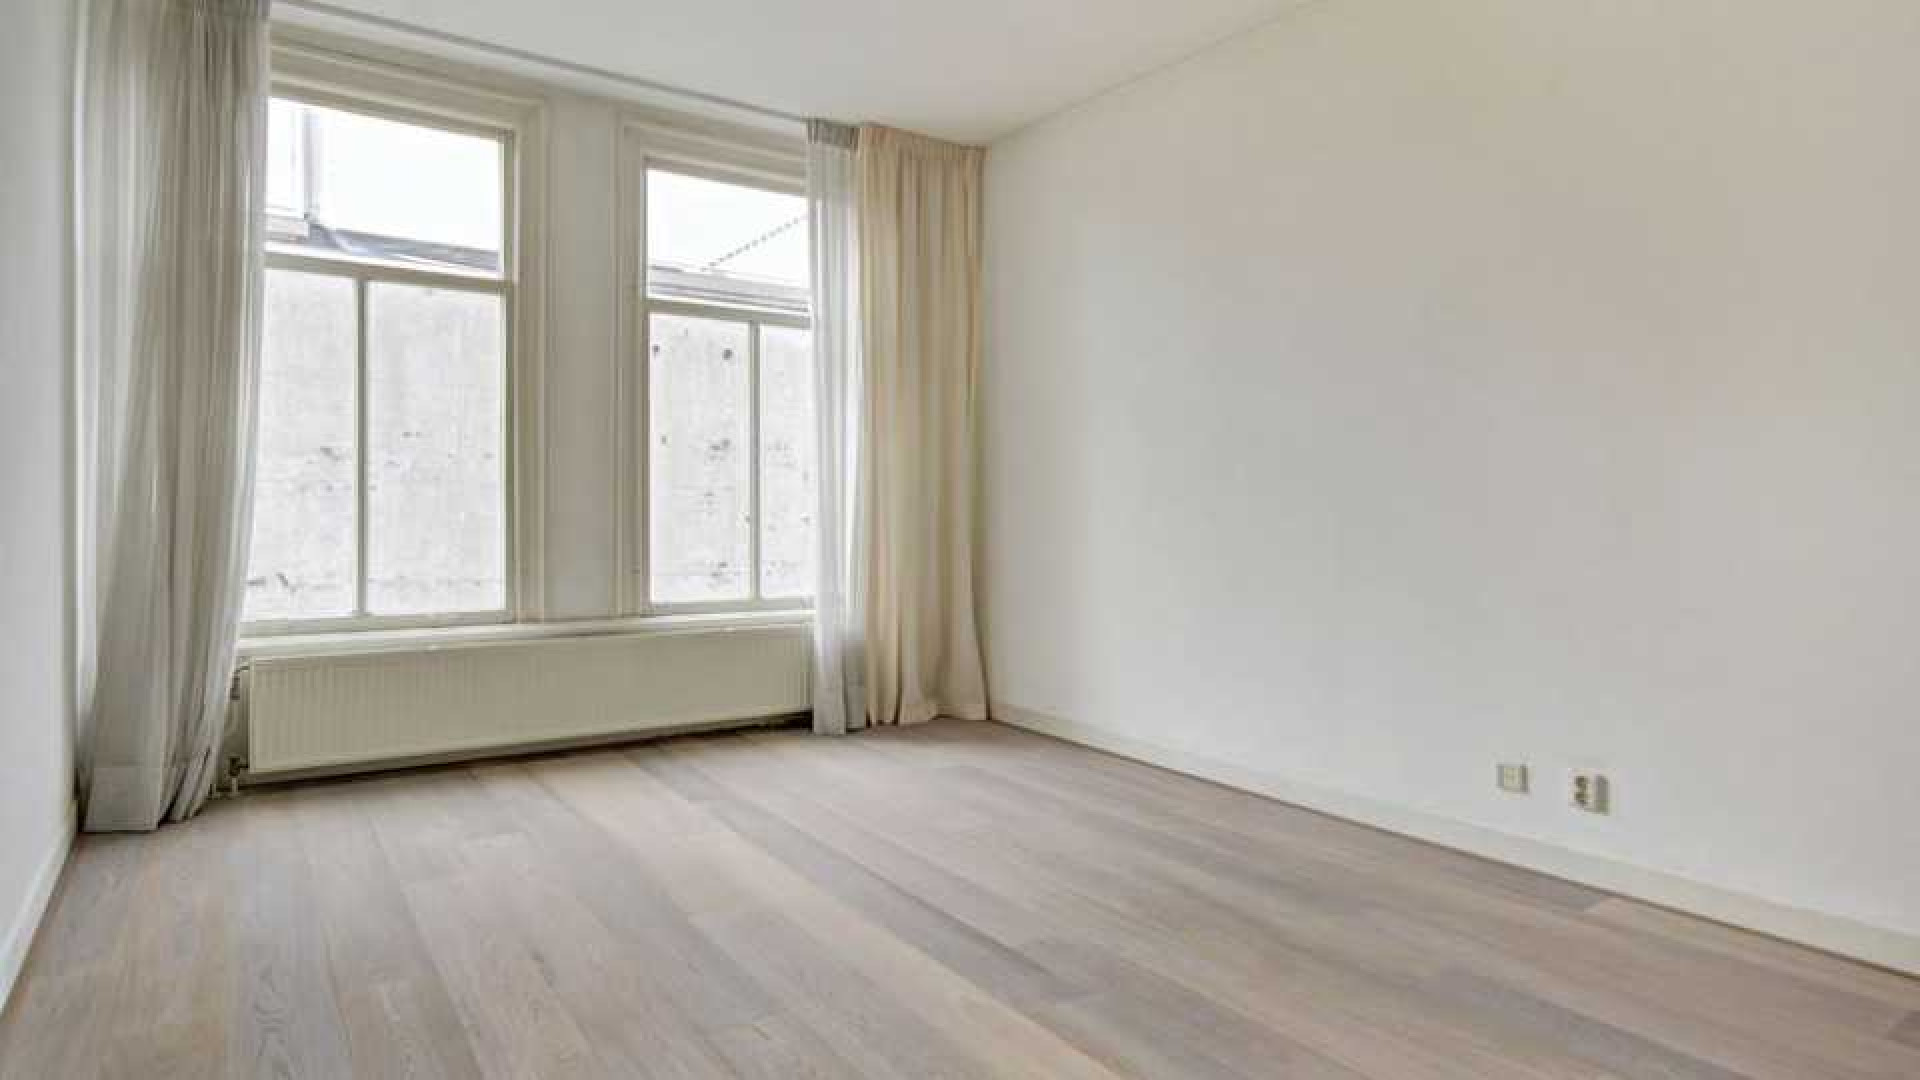 Daphne Deckers en Richard Krajicek zetten hun appartement te huur. Zie foto's 11